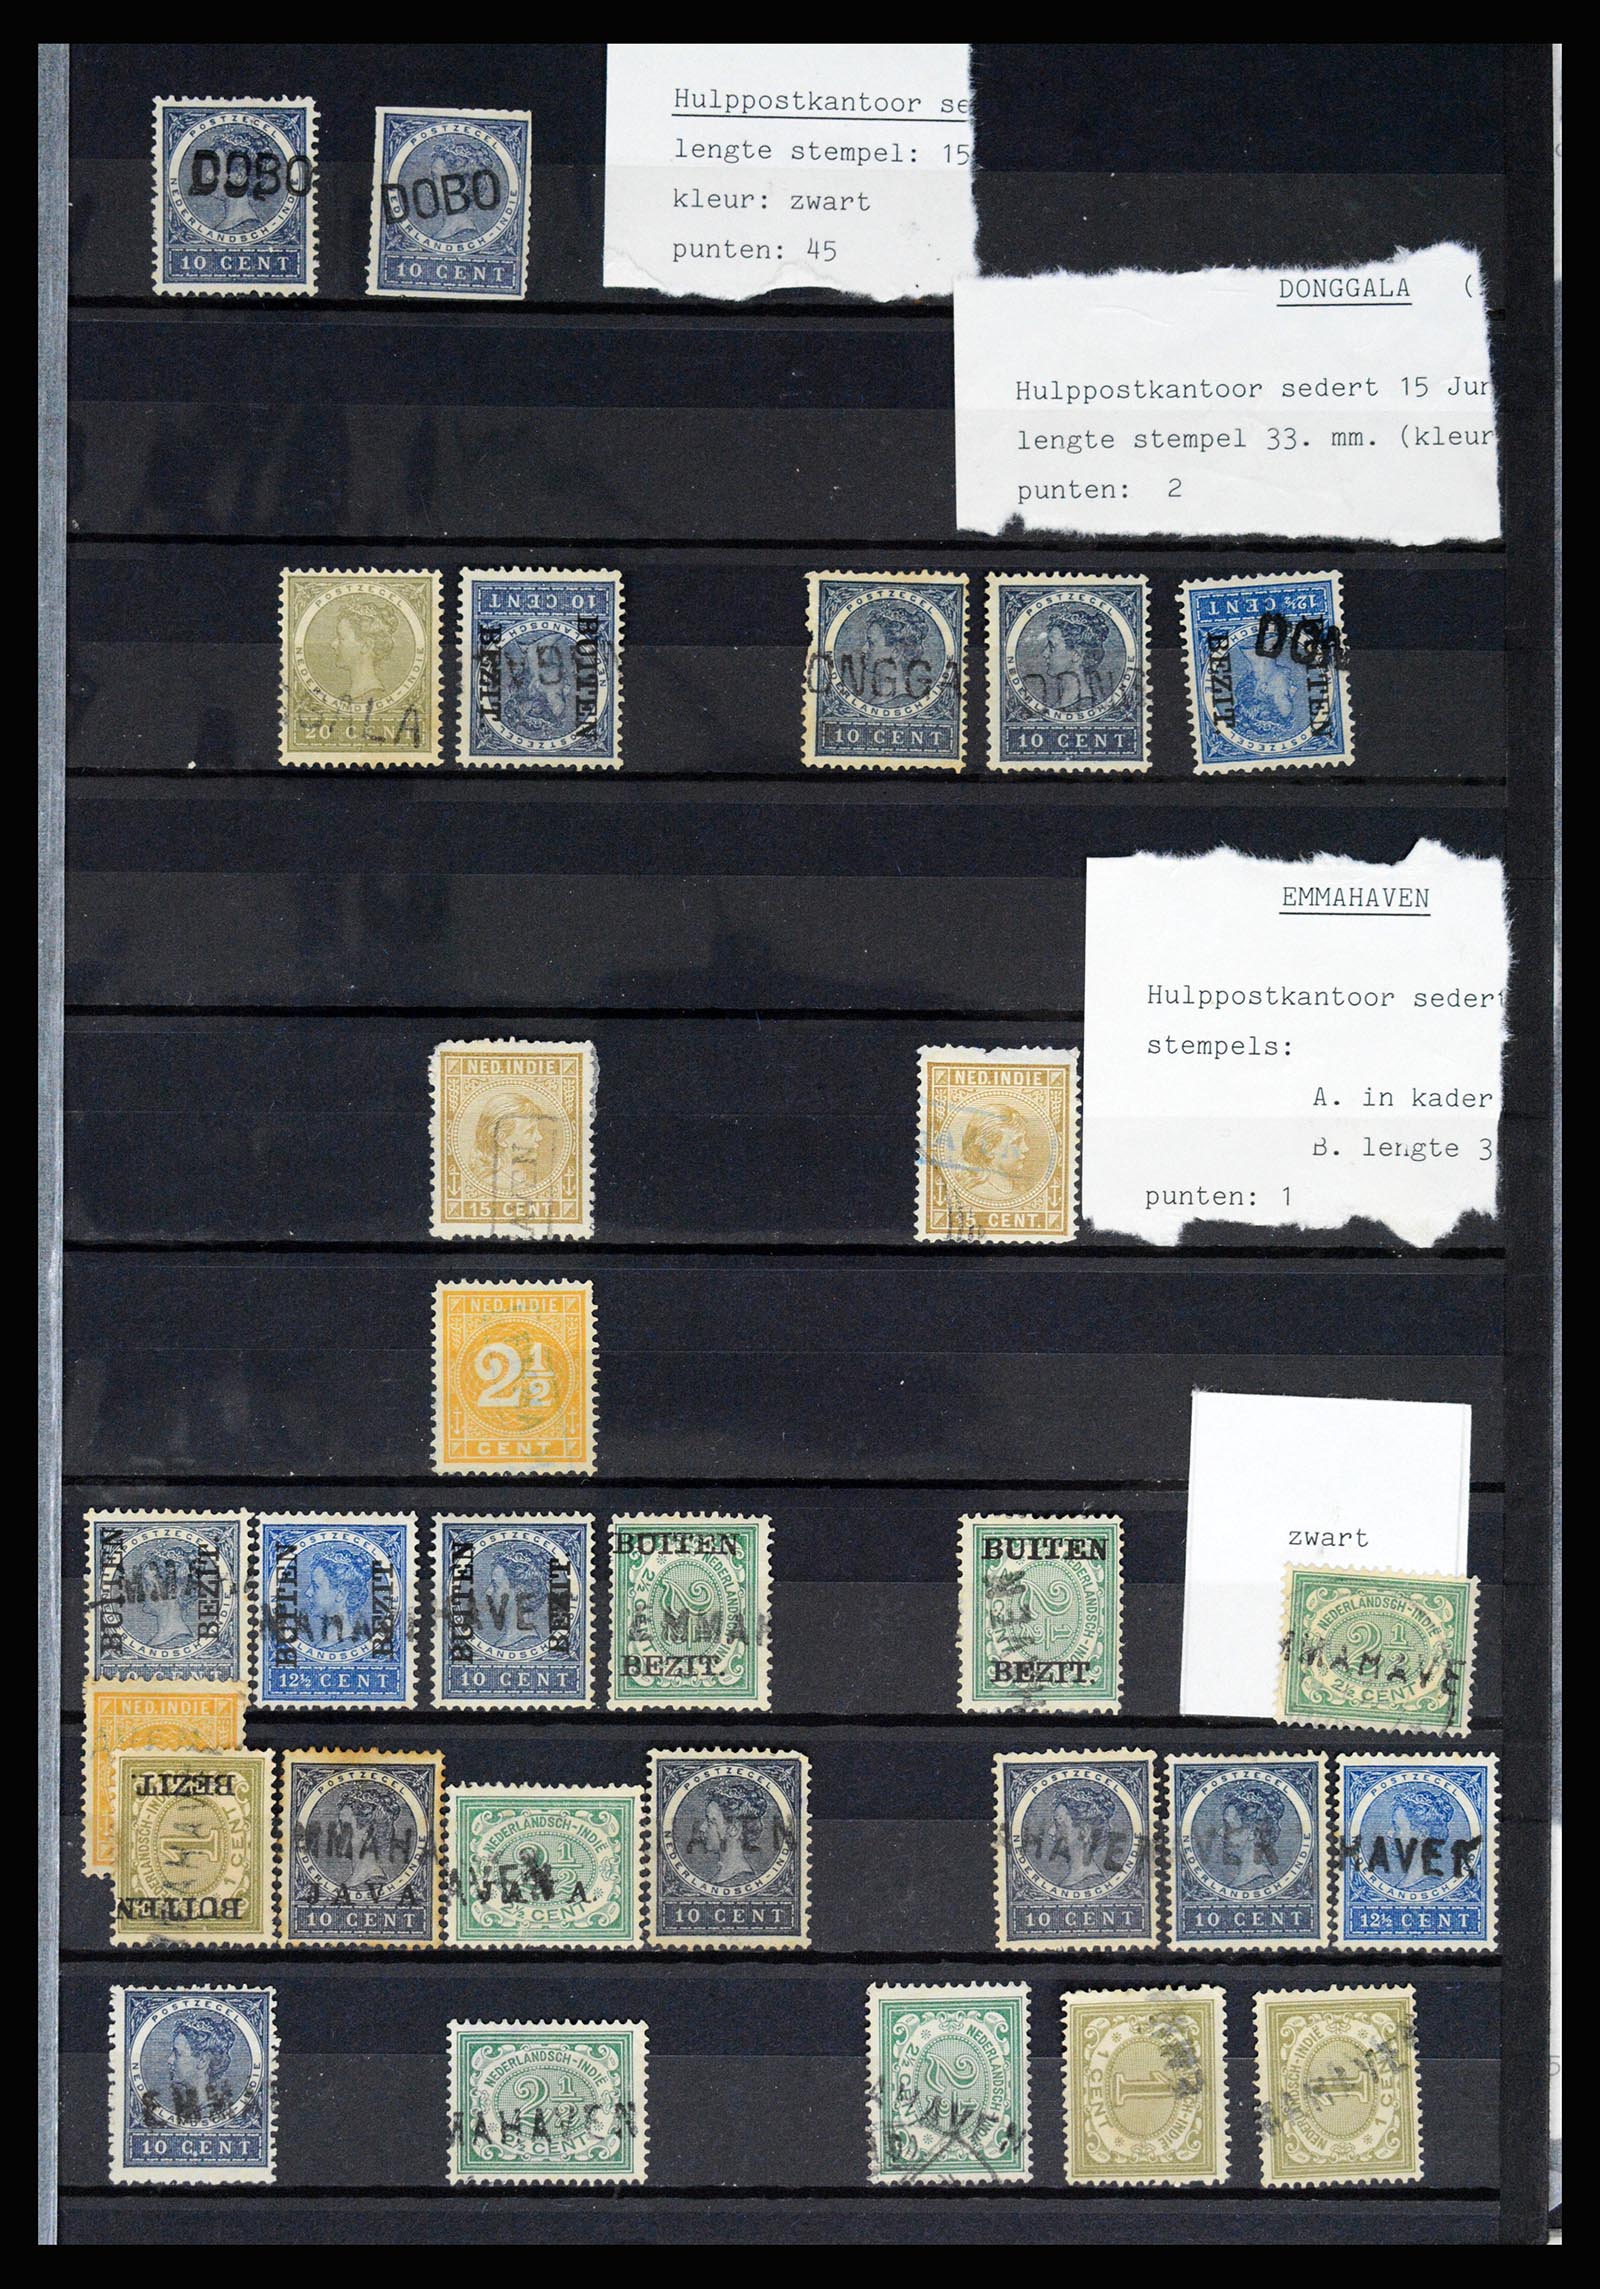 36512 025 - Stamp collection 36512 Nederlands Indië stempels 1872-1930.